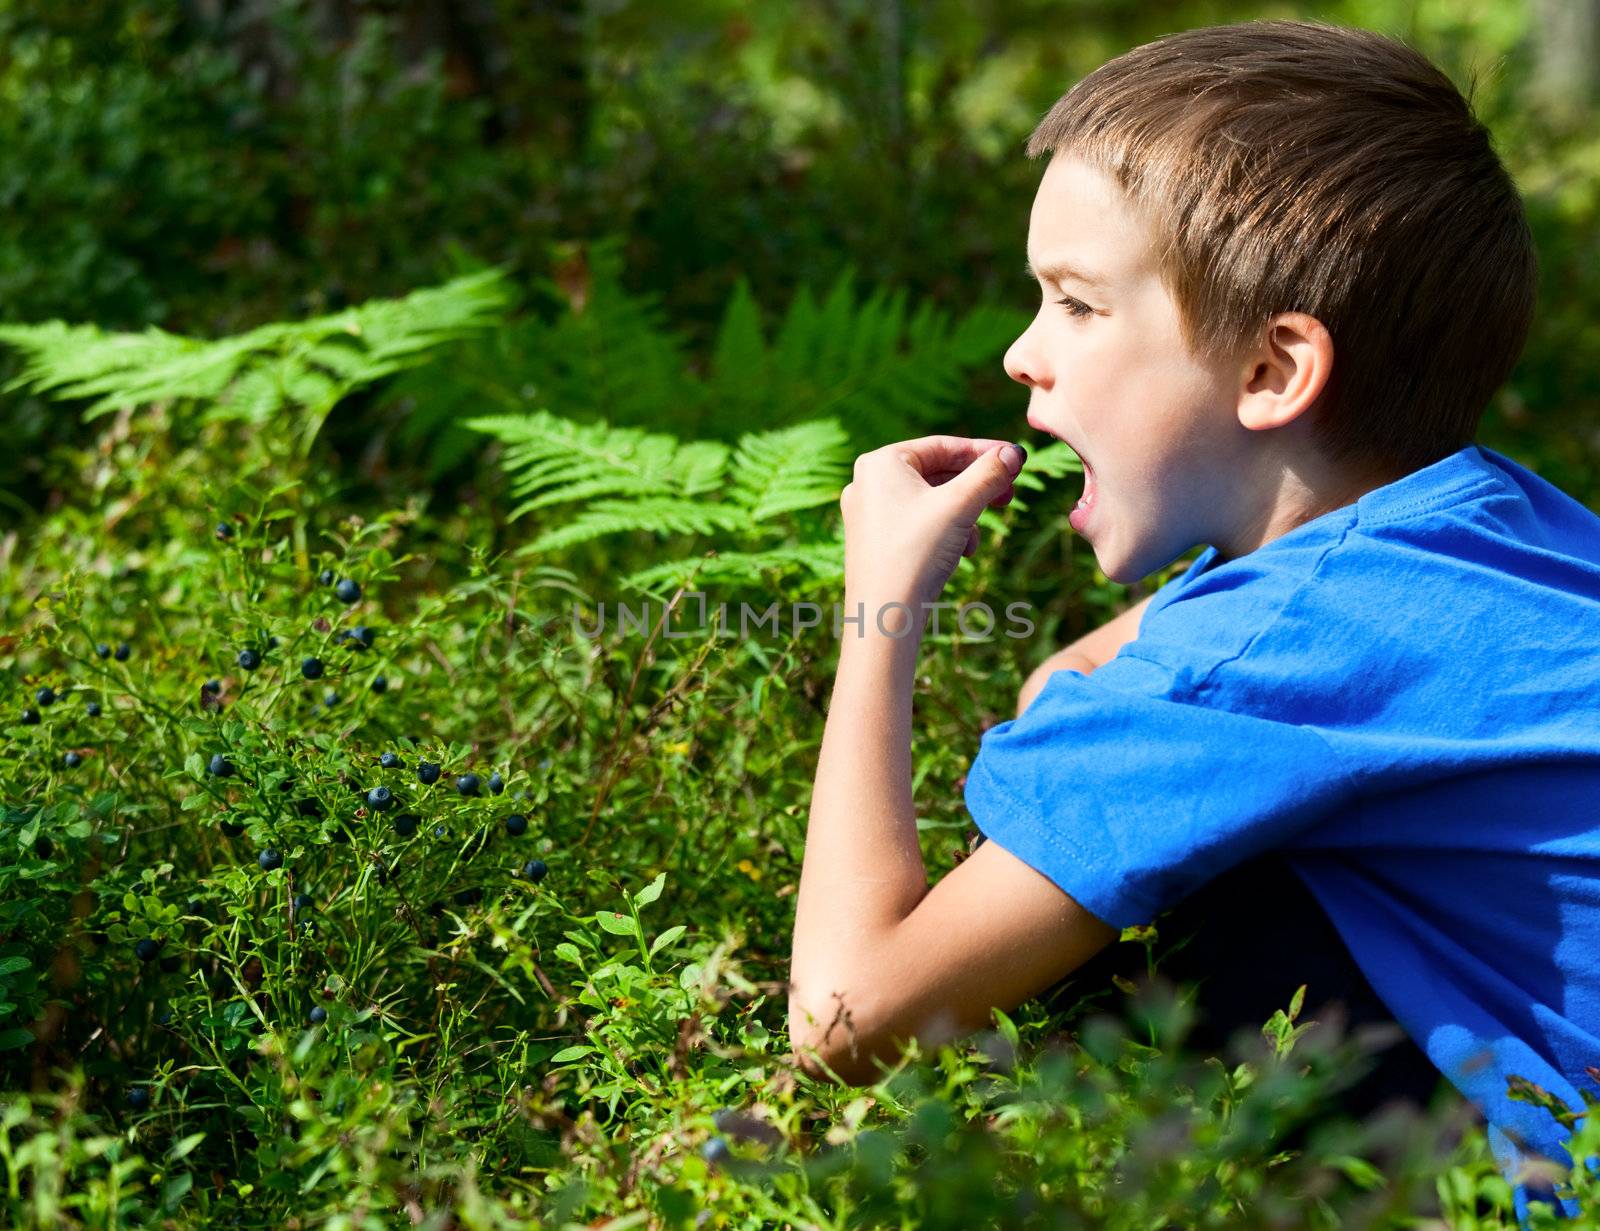 Kid picking berries by naumoid